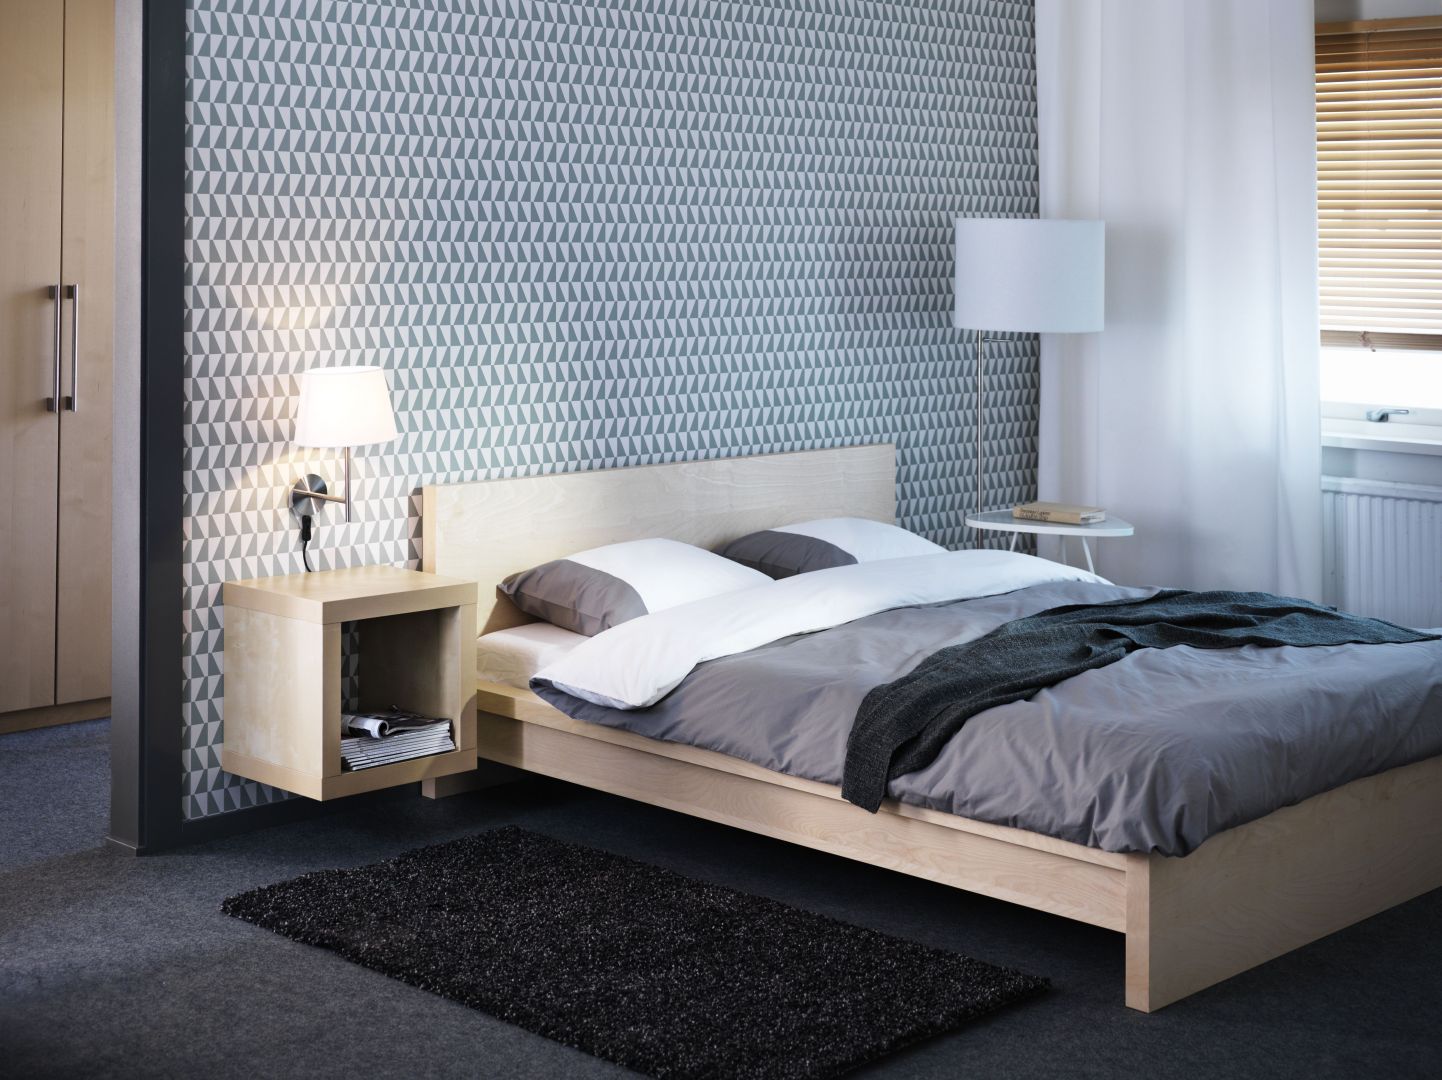 Łóżko Malm w okleinie brzozowej o niskiej ramie łóżka. Dno łóżka z drewnianych listew. 
Fot. IKEA